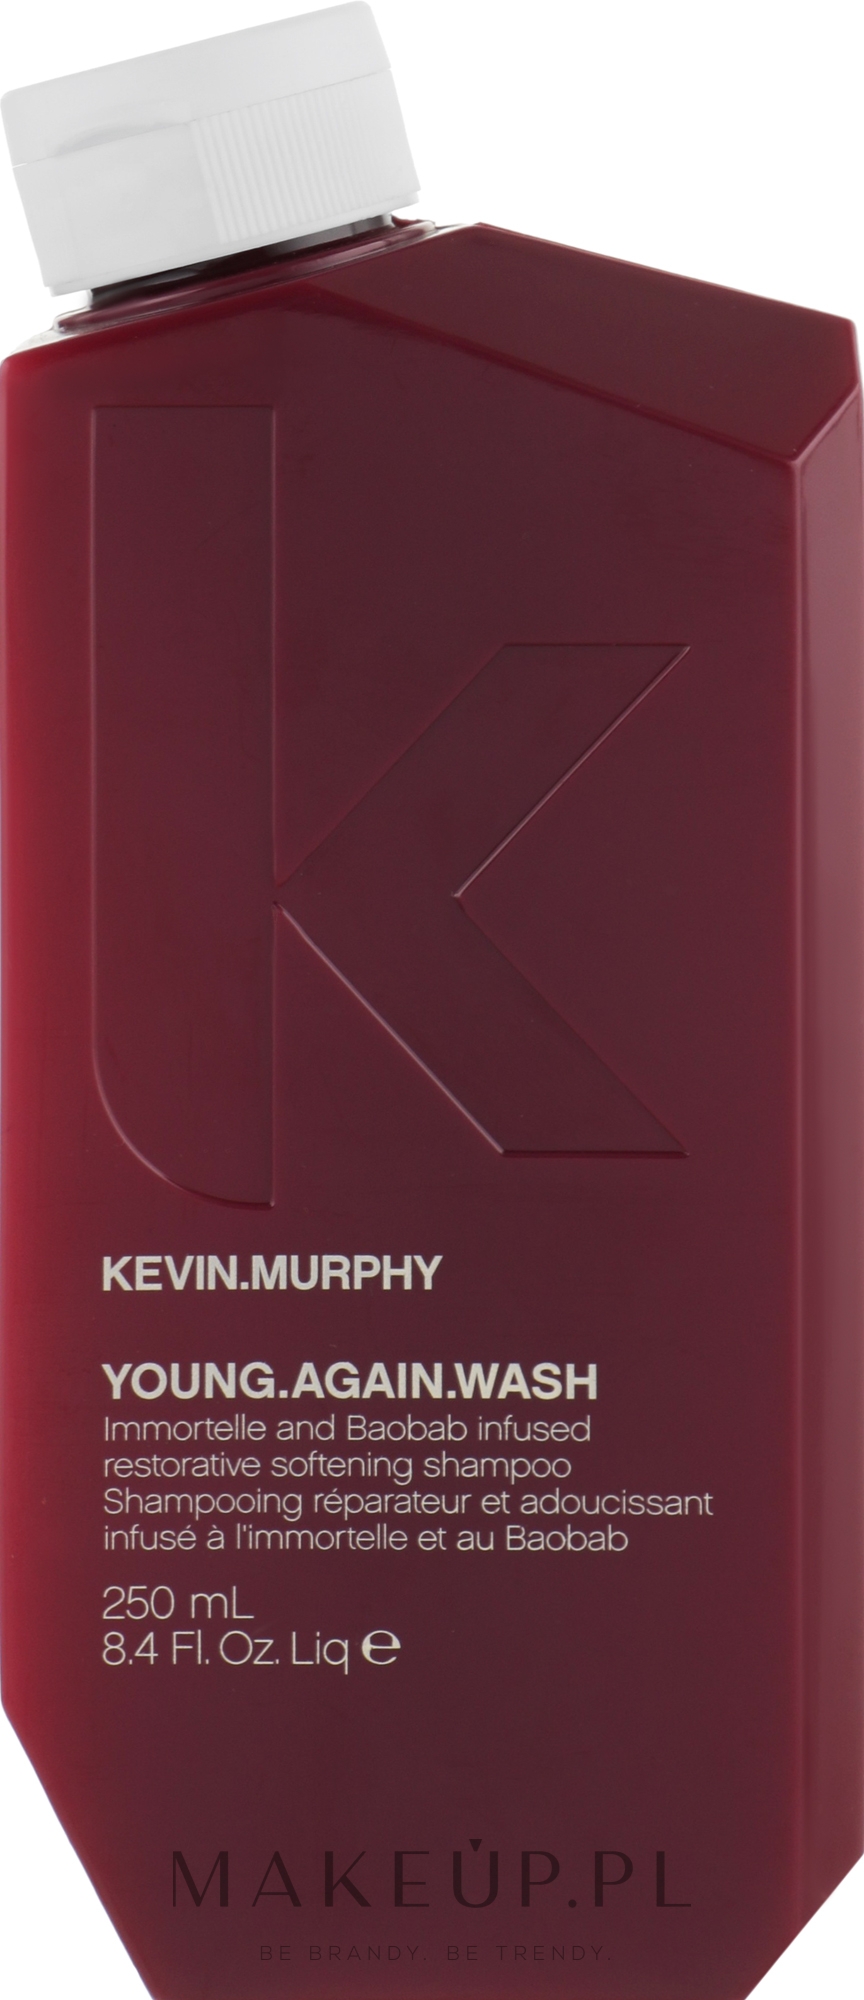 Wzmacniająca odżywka przeciwstarzeniowa - Kevin.Murphy Young Again Wash Shampoo — Zdjęcie 250 ml